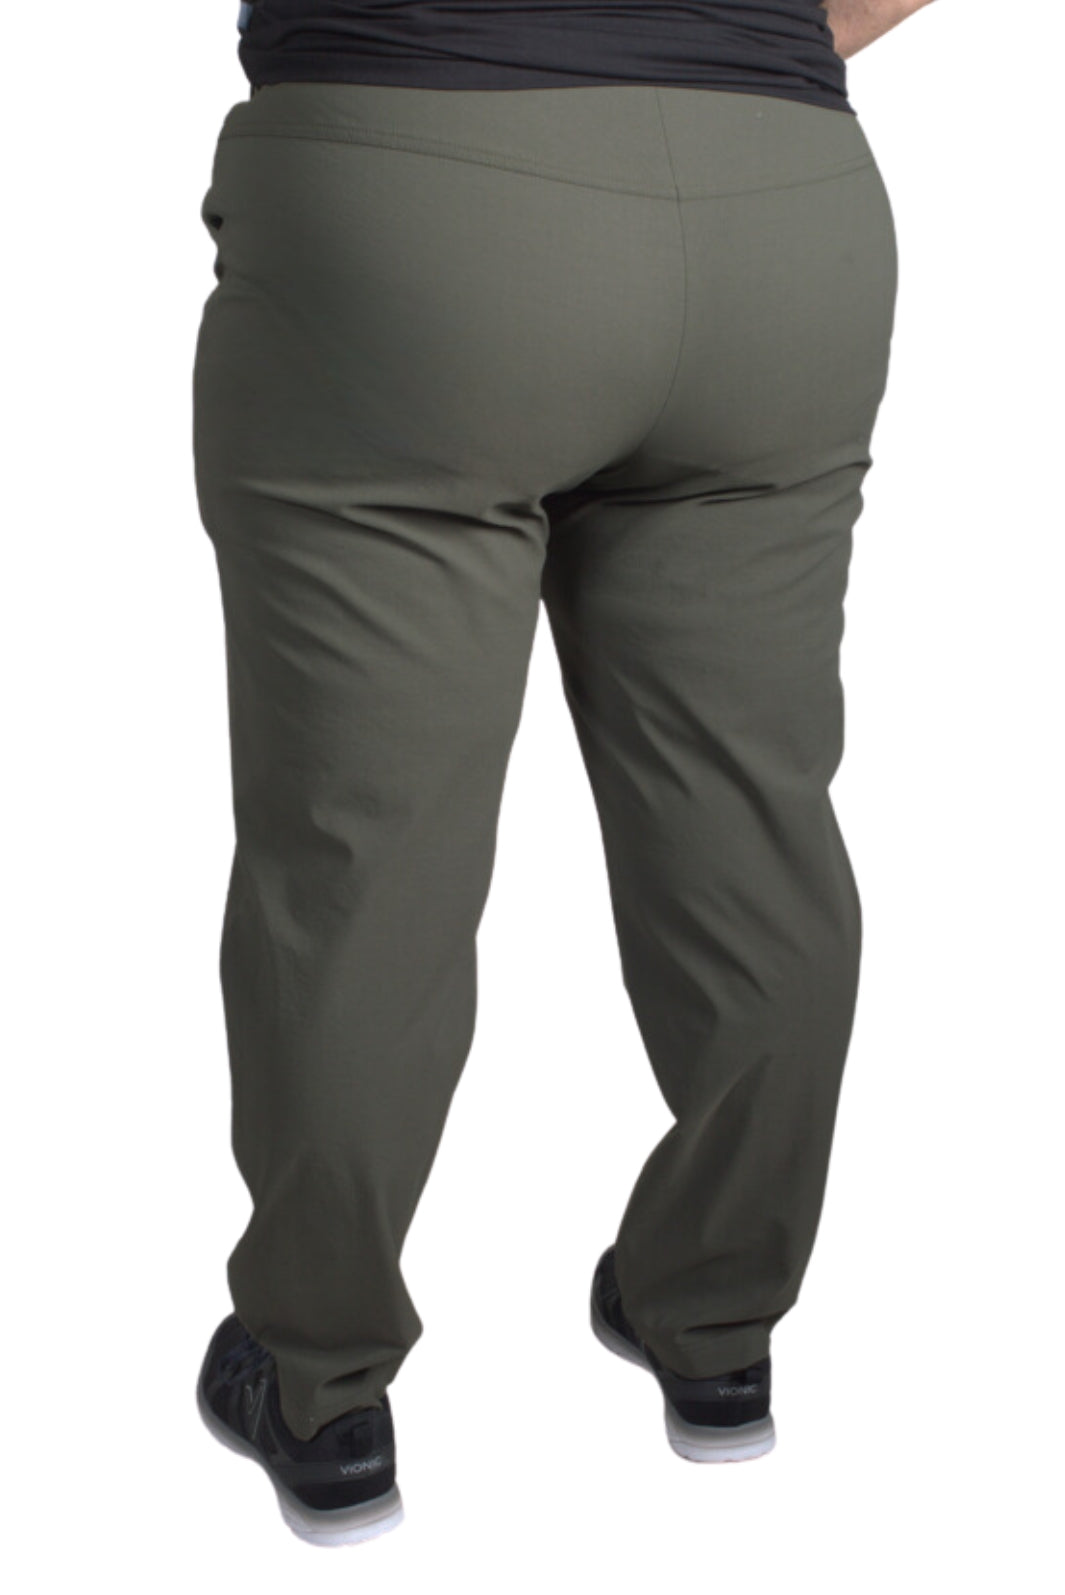 Plus Size Chesapeake Pants by Sportive Plus